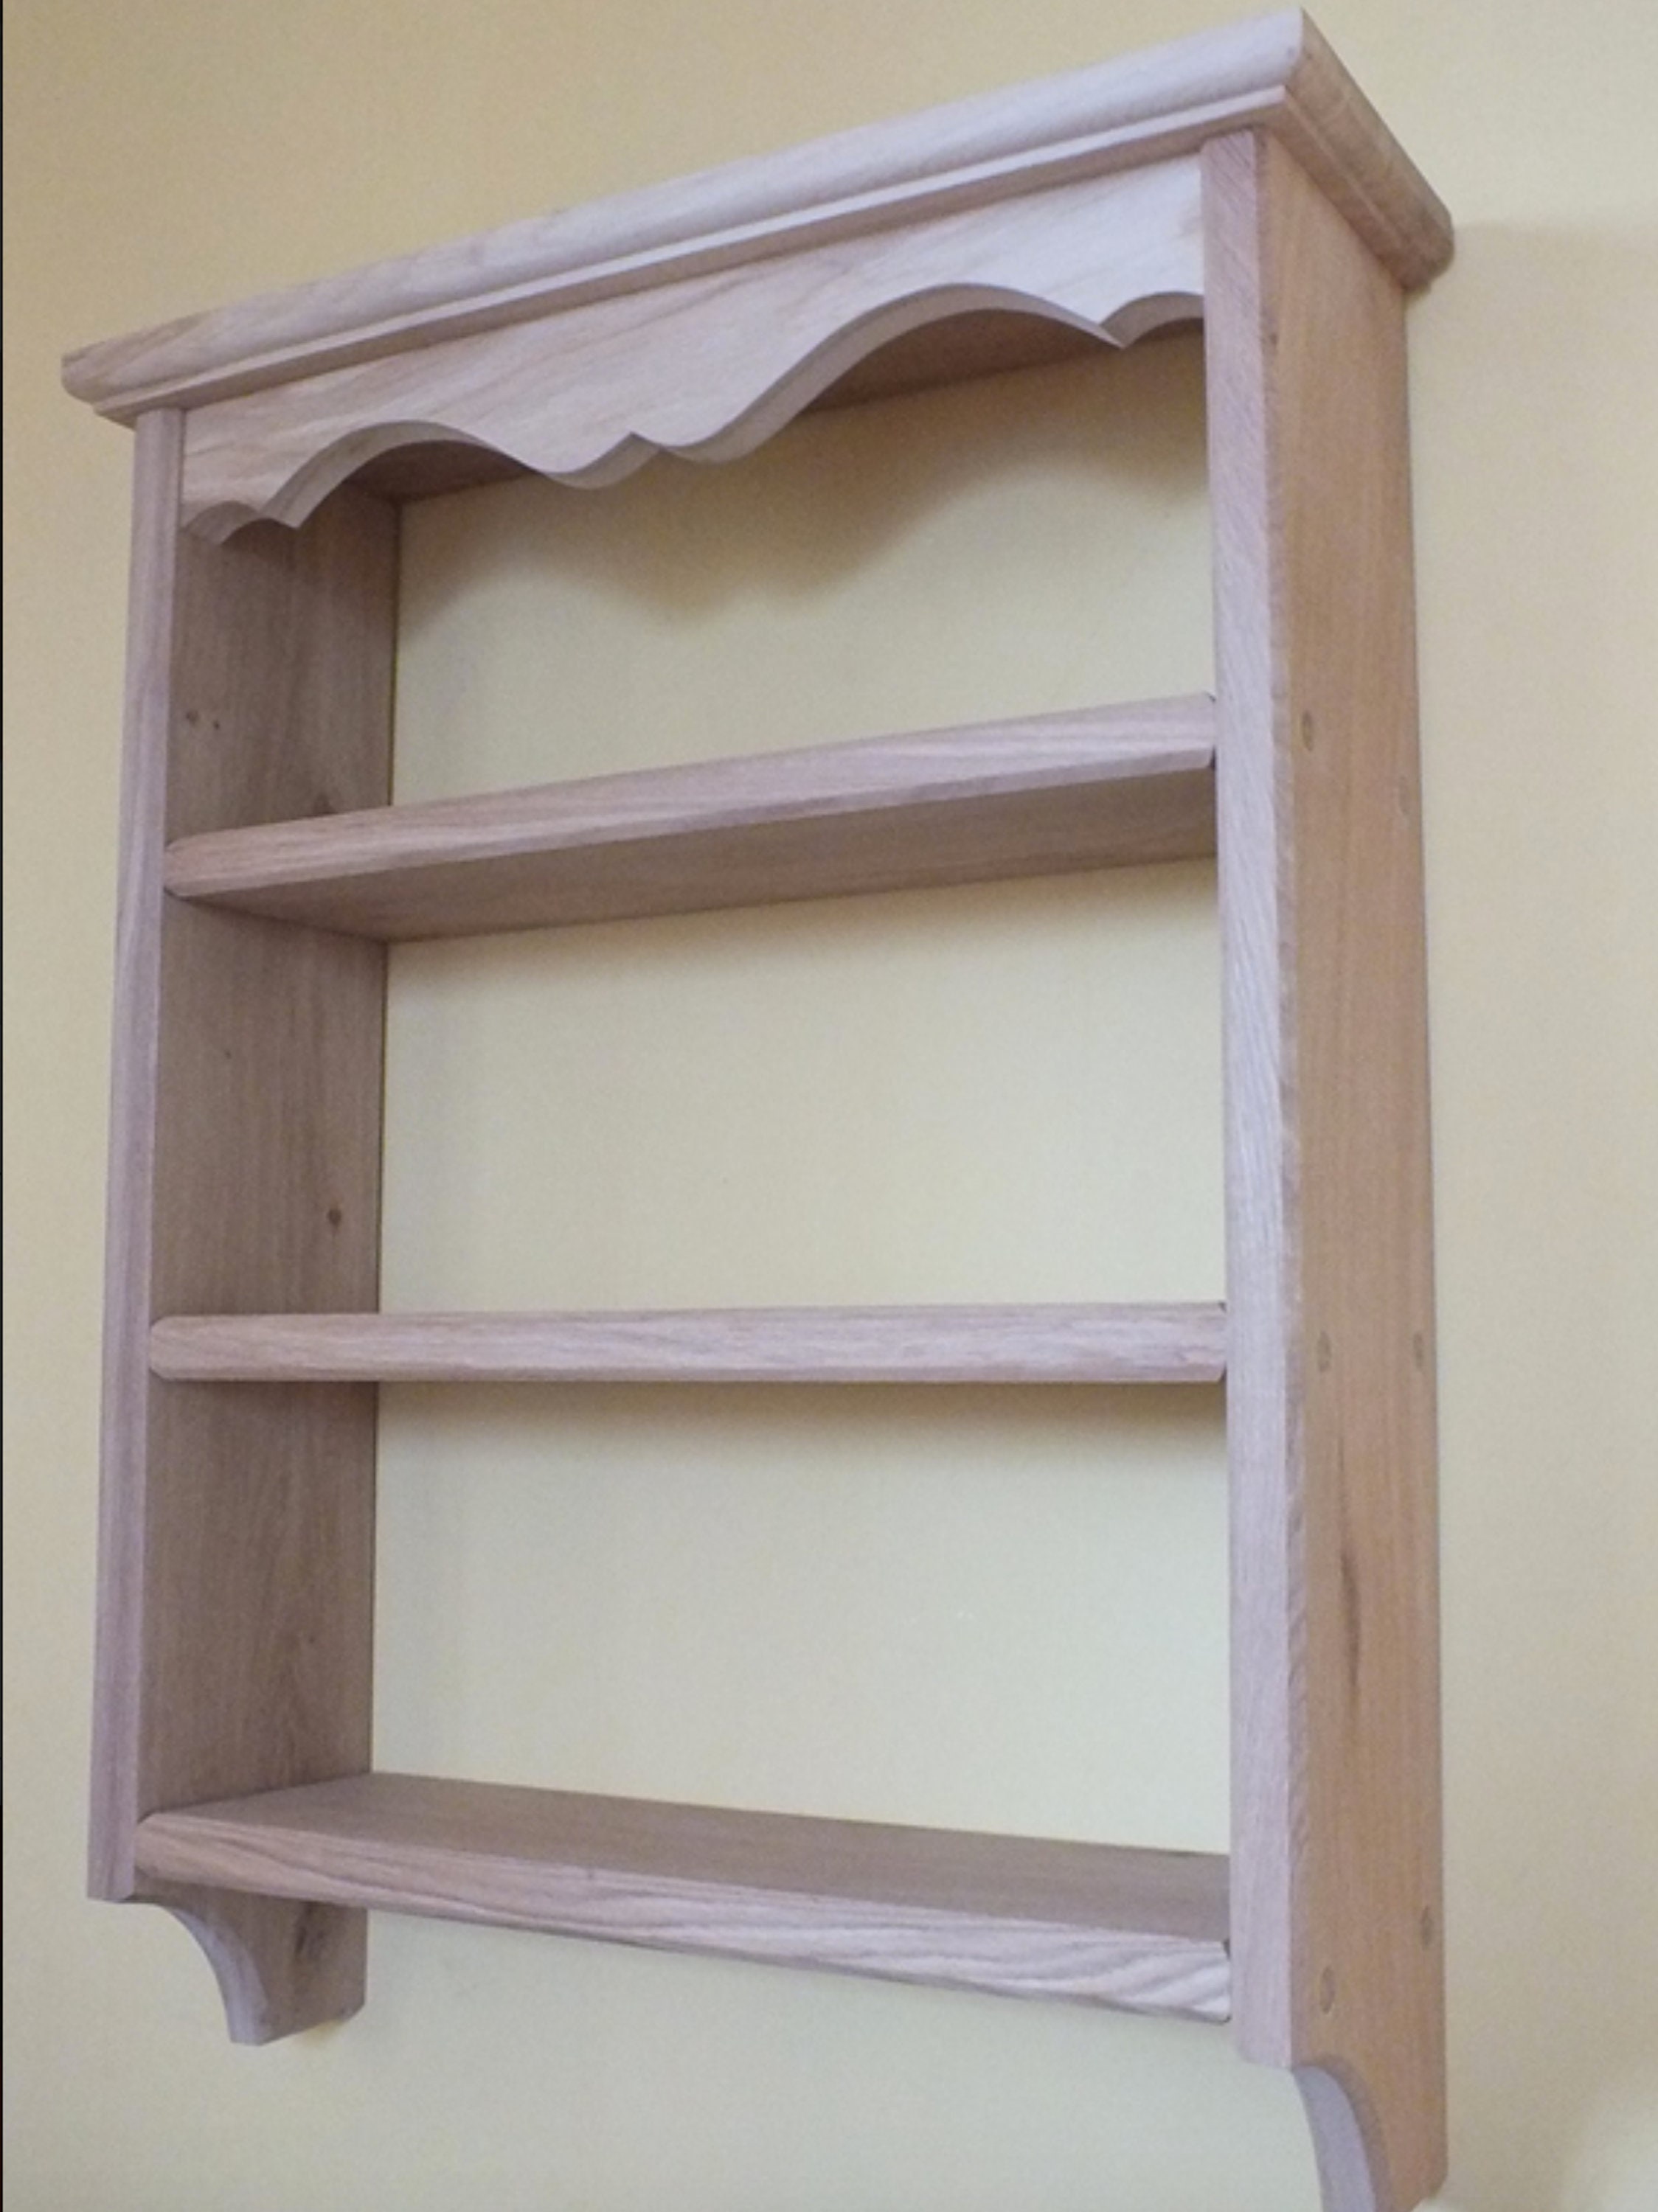  KIRANDY Estantería de madera maciza de roble blanco, armario de  pared de almacenamiento de madera (color cerezo, tamaño: C3 añadir 7.7 x  11.0 x 47.2 in) : Hogar y Cocina